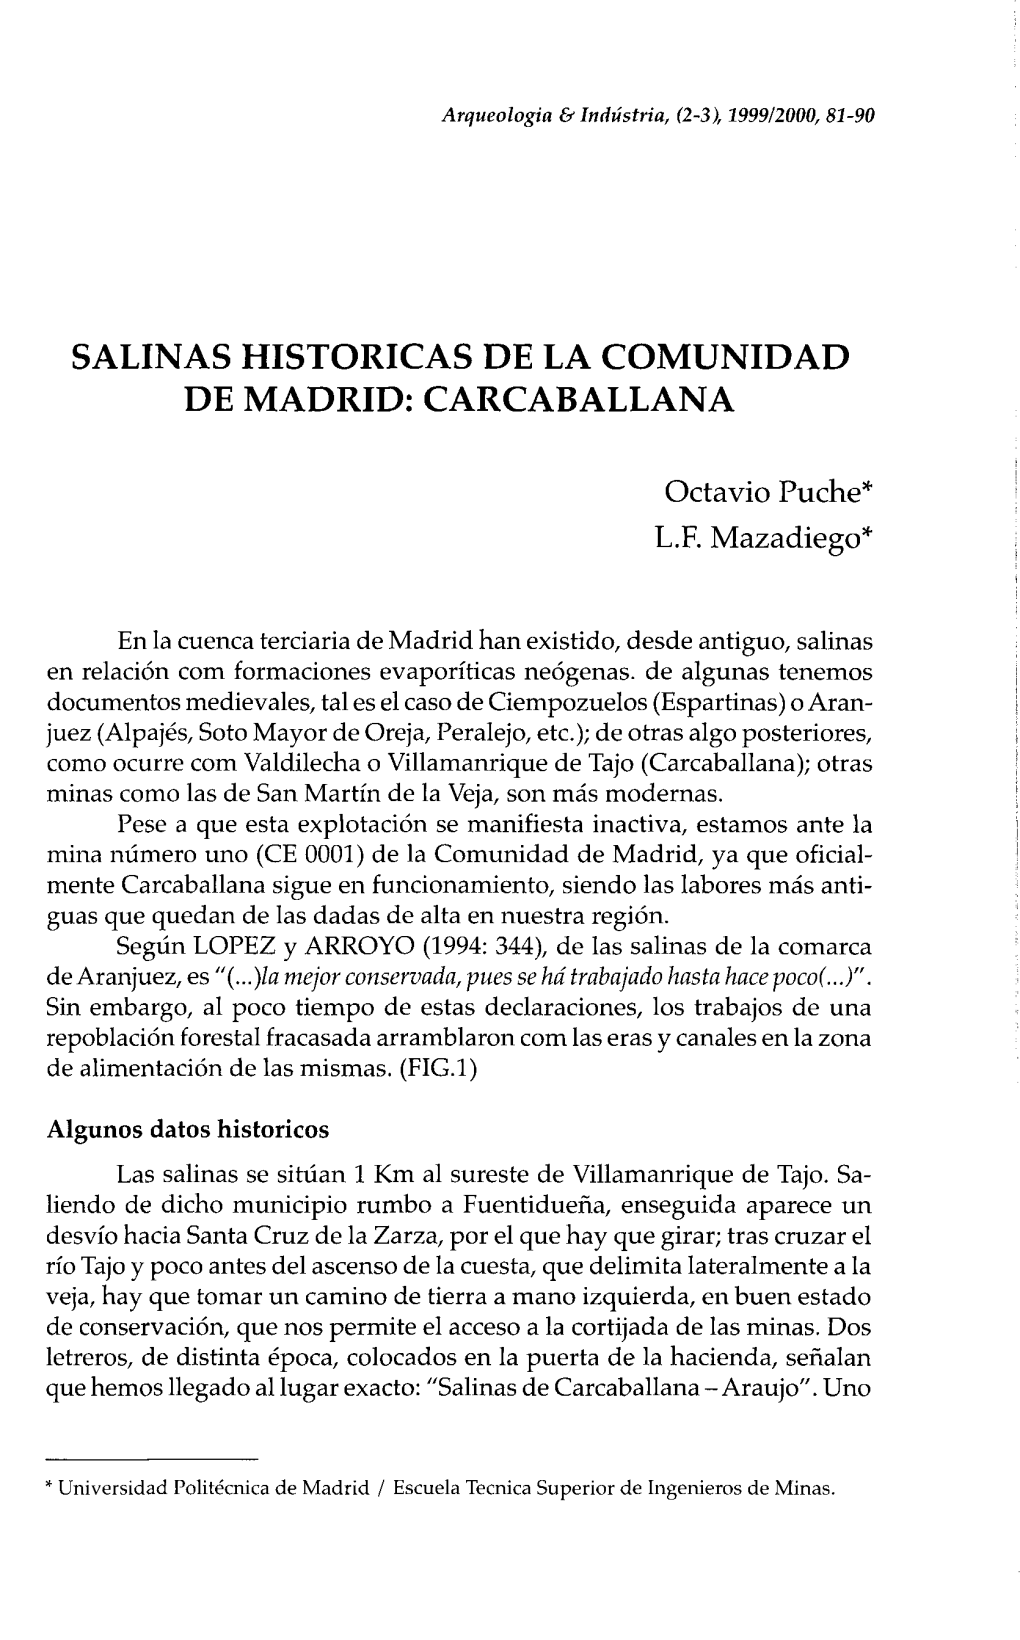 Salinas Historicas De La Comunidad De Madrid: Carcaballana